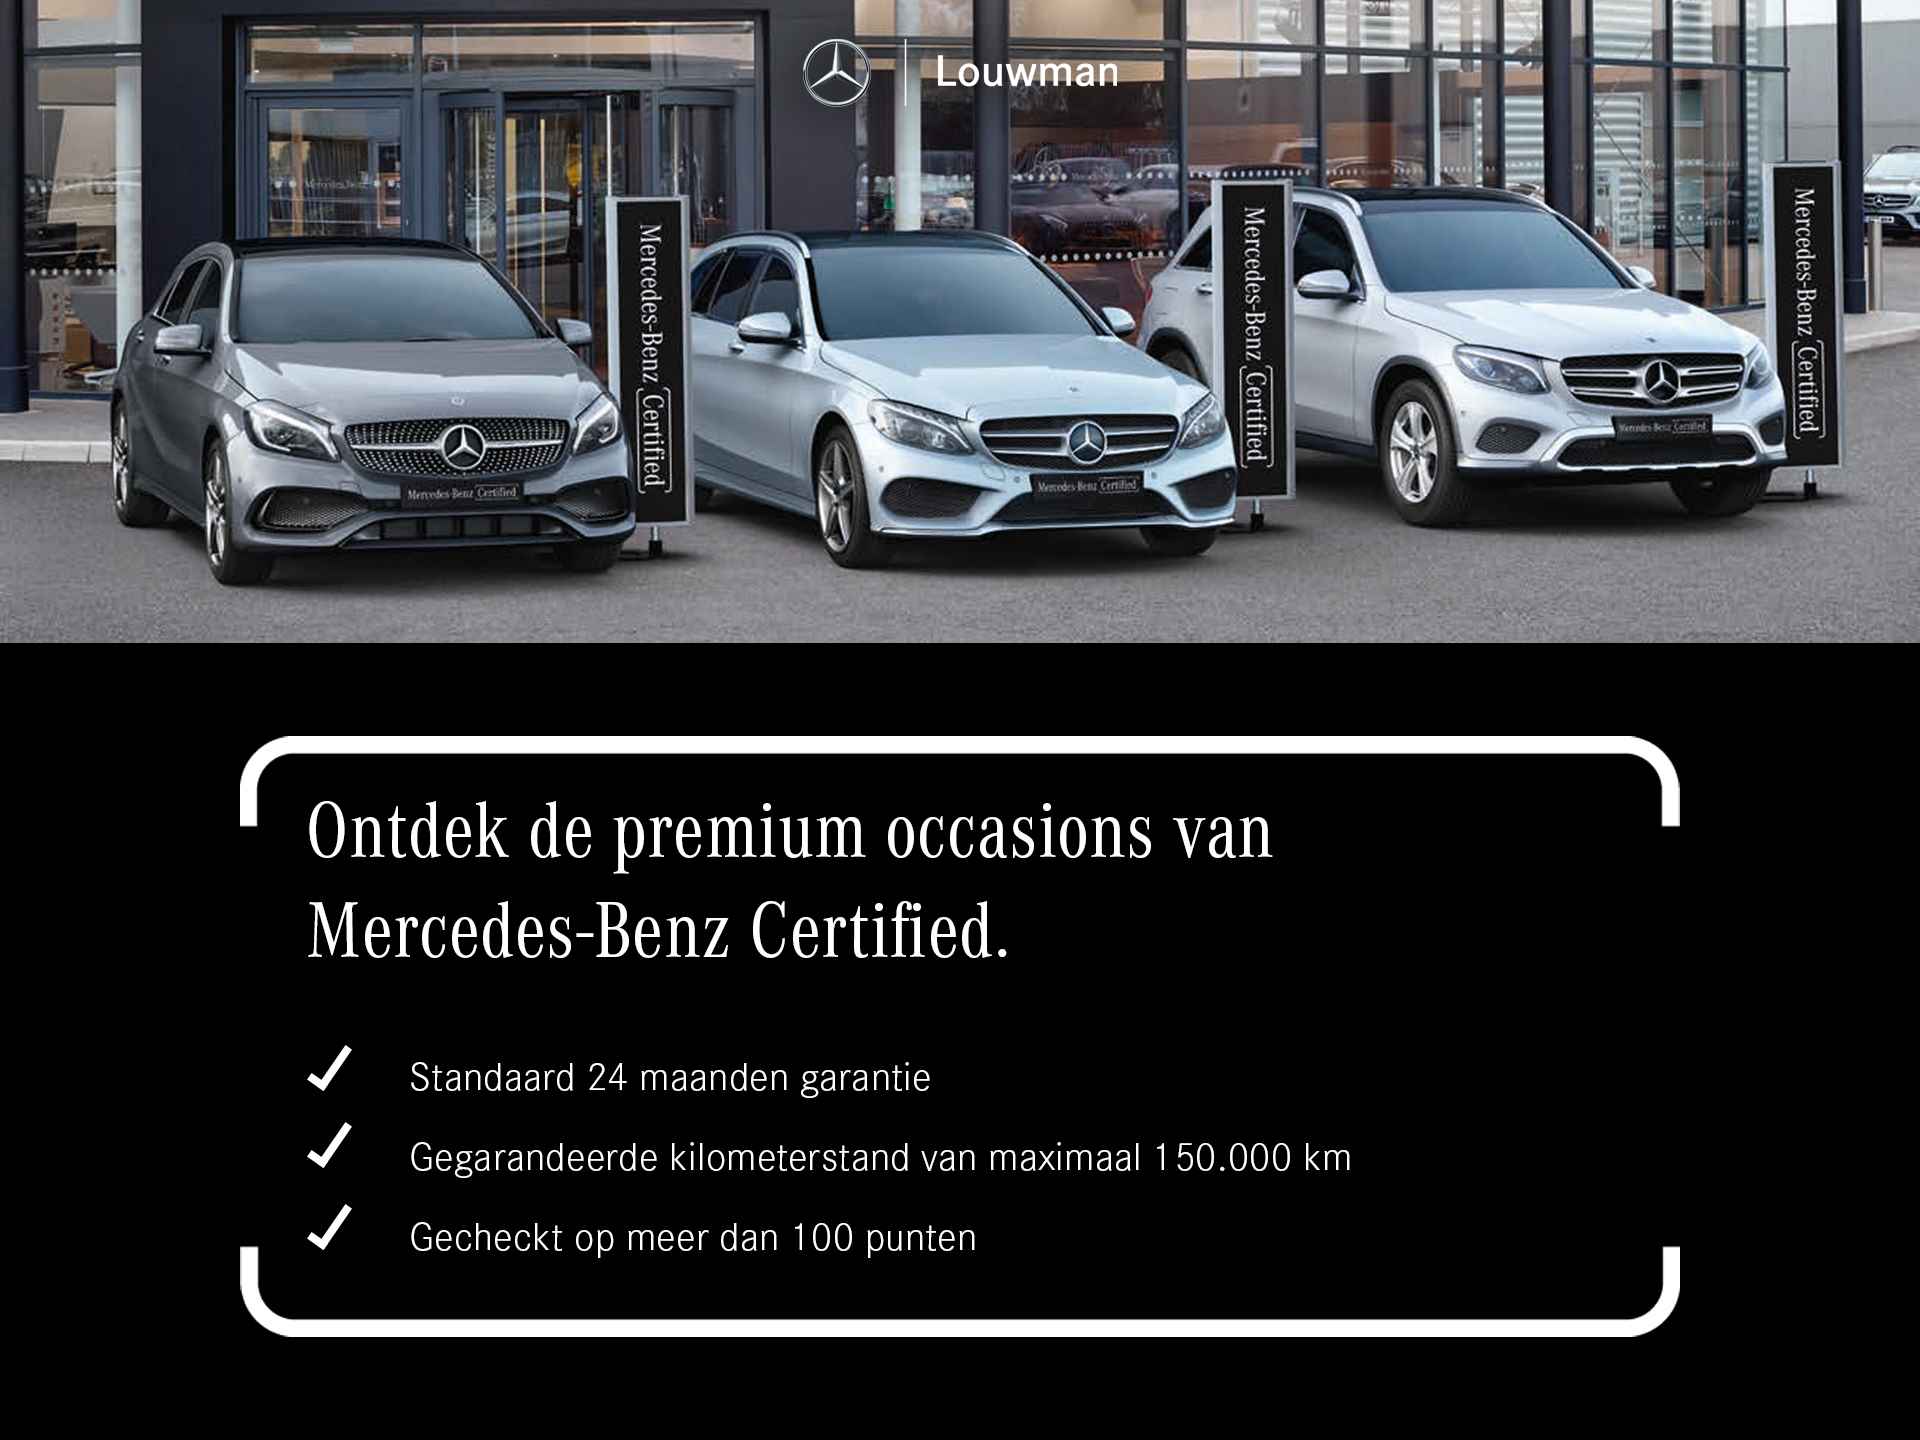 Mercedes-Benz GLE 450 4MATIC AMG Line Premium | Panoramadak | Luchtvering | Burmester | Navigatie | MBUX wide screen | Alarm klasse 3 | Parking support | inclusief 24 maanden MB Certified garantie voor europa - 38/39